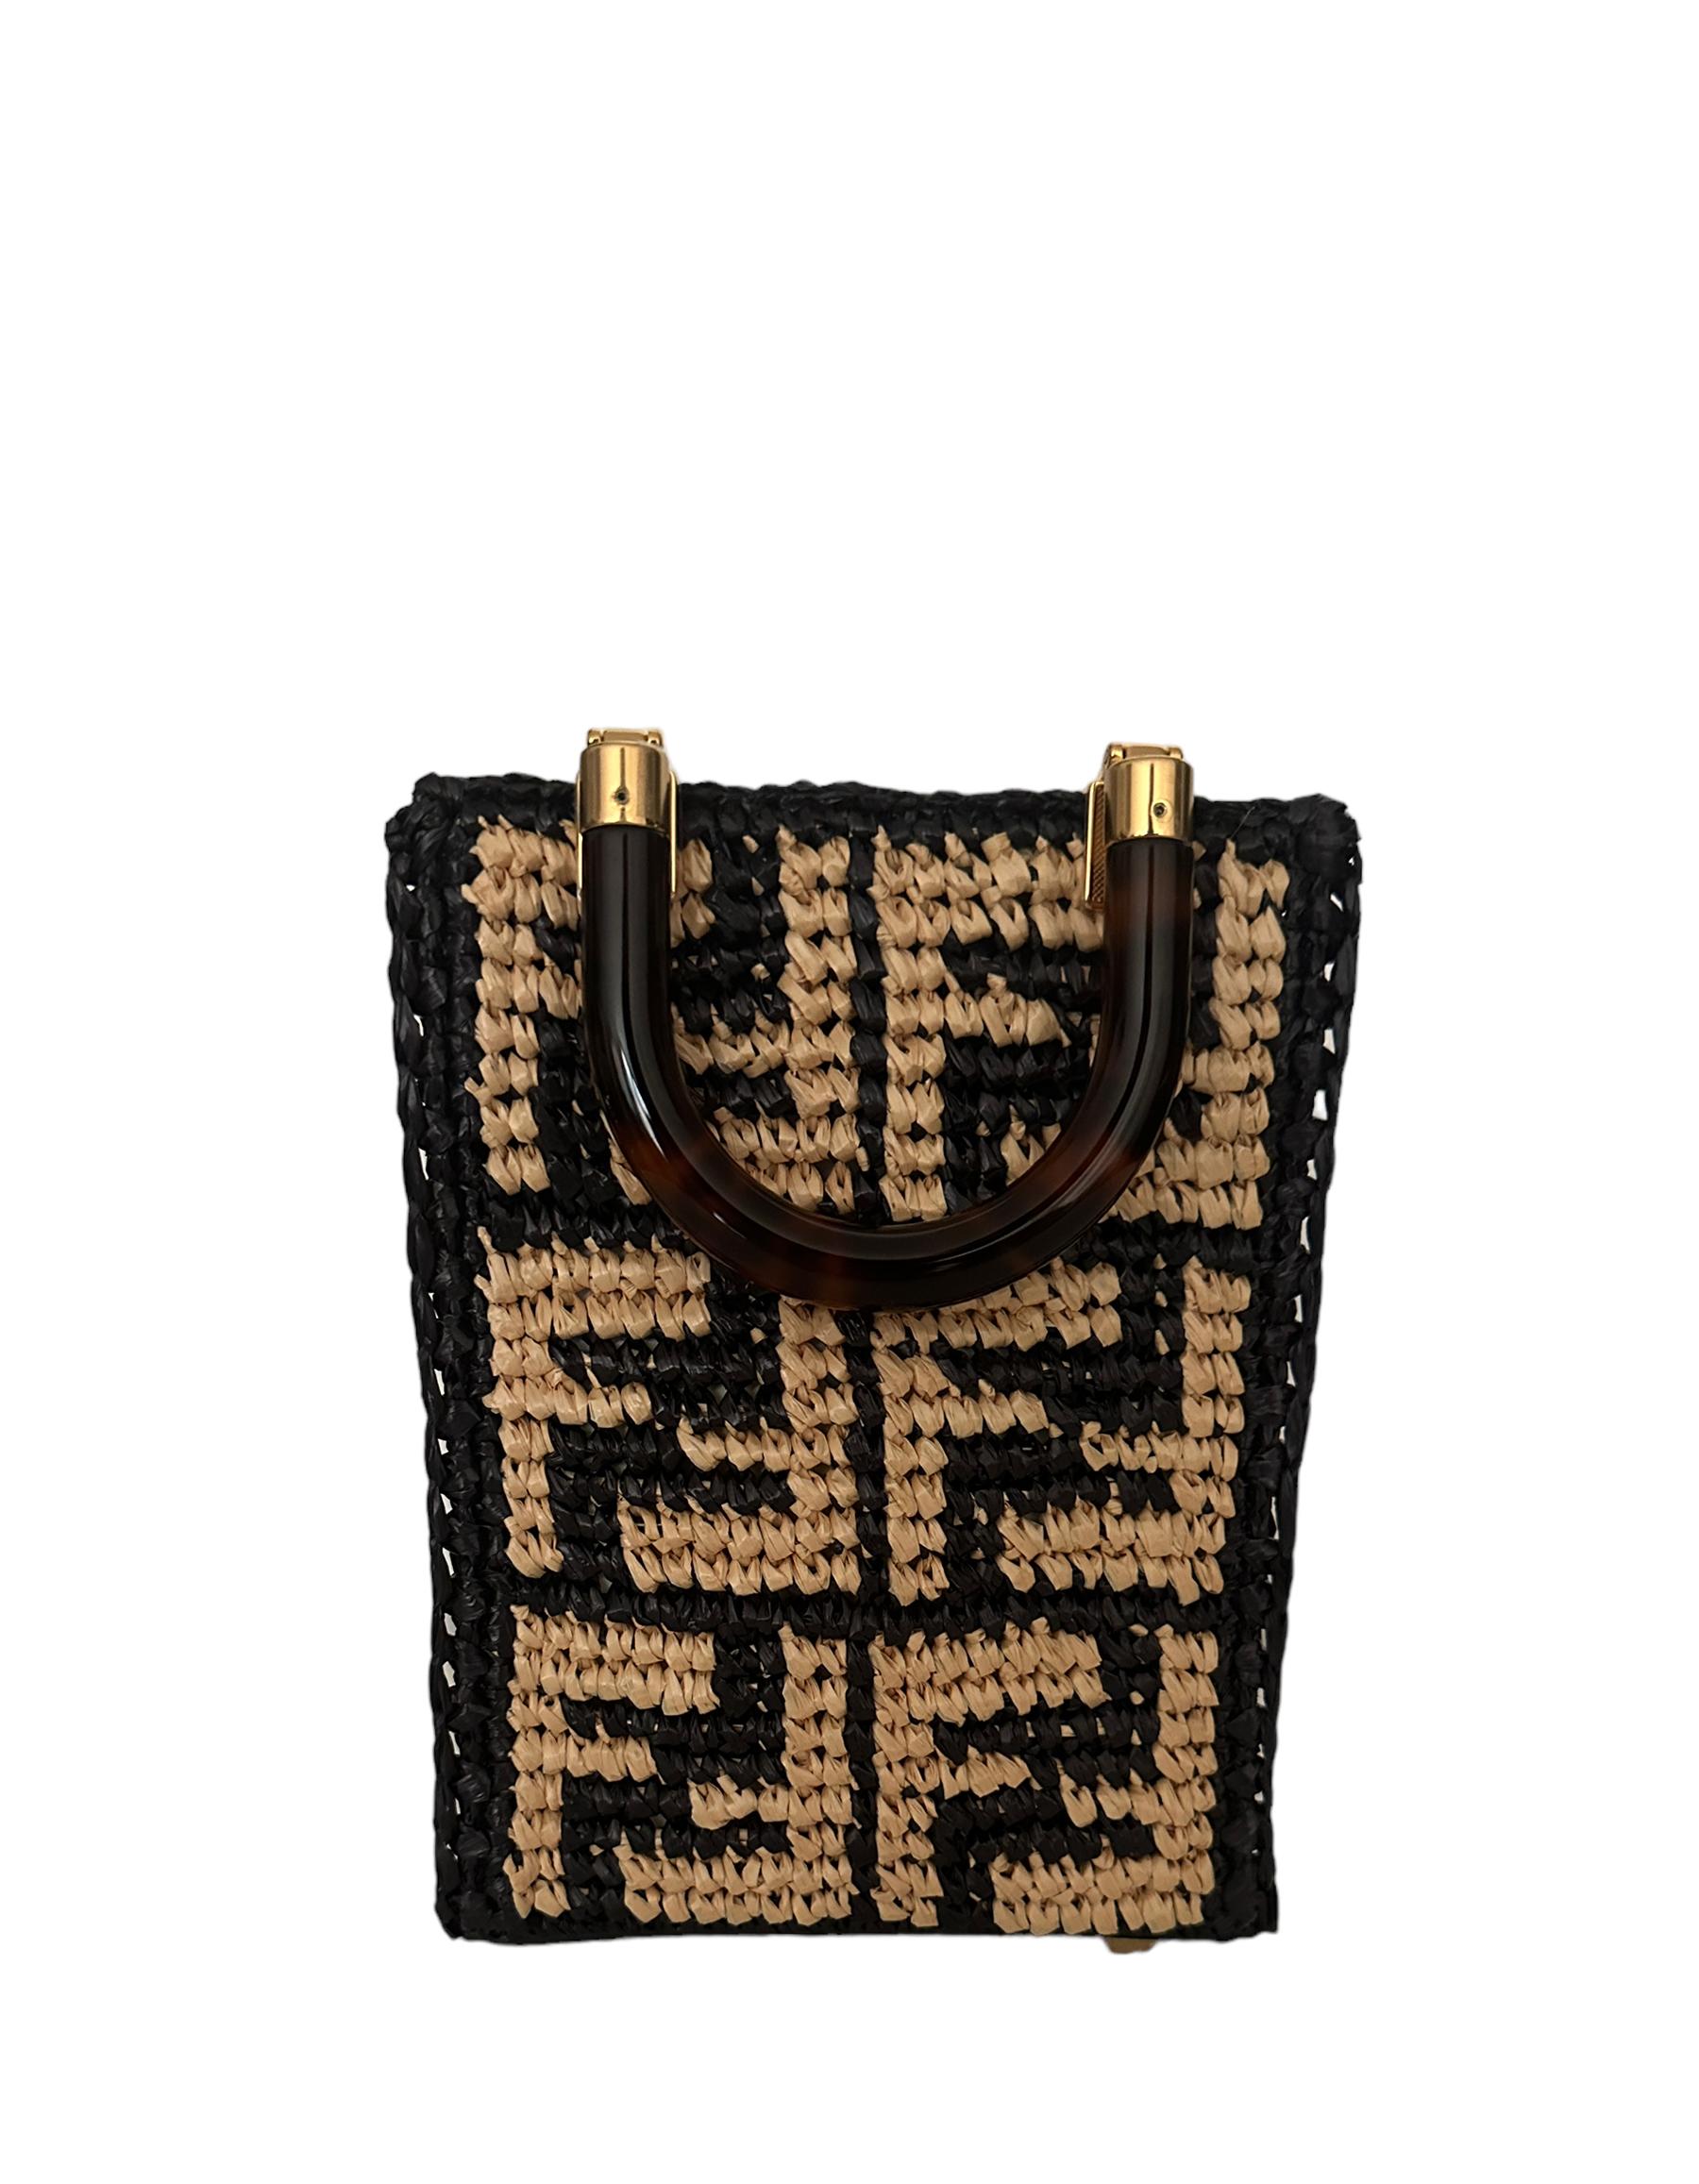 Fendi Raffia Tote Bag - 2 For Sale on 1stDibs | fendi raffia bag,  strandtasche designer sale, fendi strandtasche